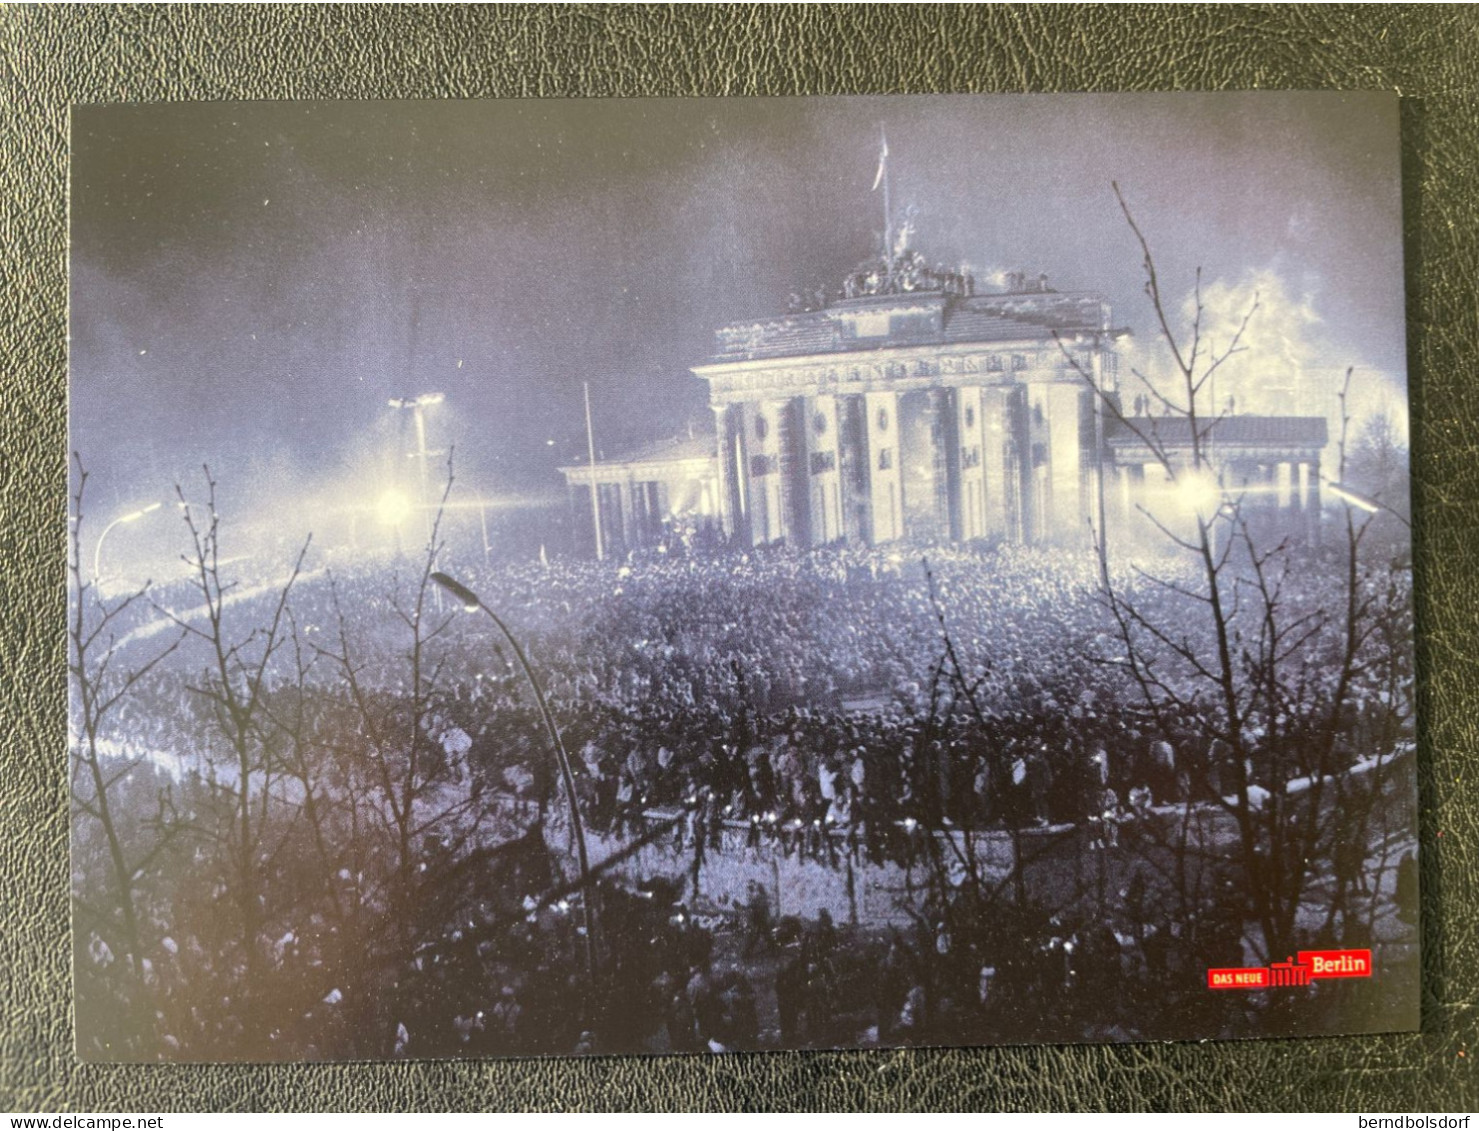 Postkarten Set Mit 6 Schöne Motive In Einer Pappummantelung, Das Neue Berlin: 1989 - 1999 Ungelaufen - Buch